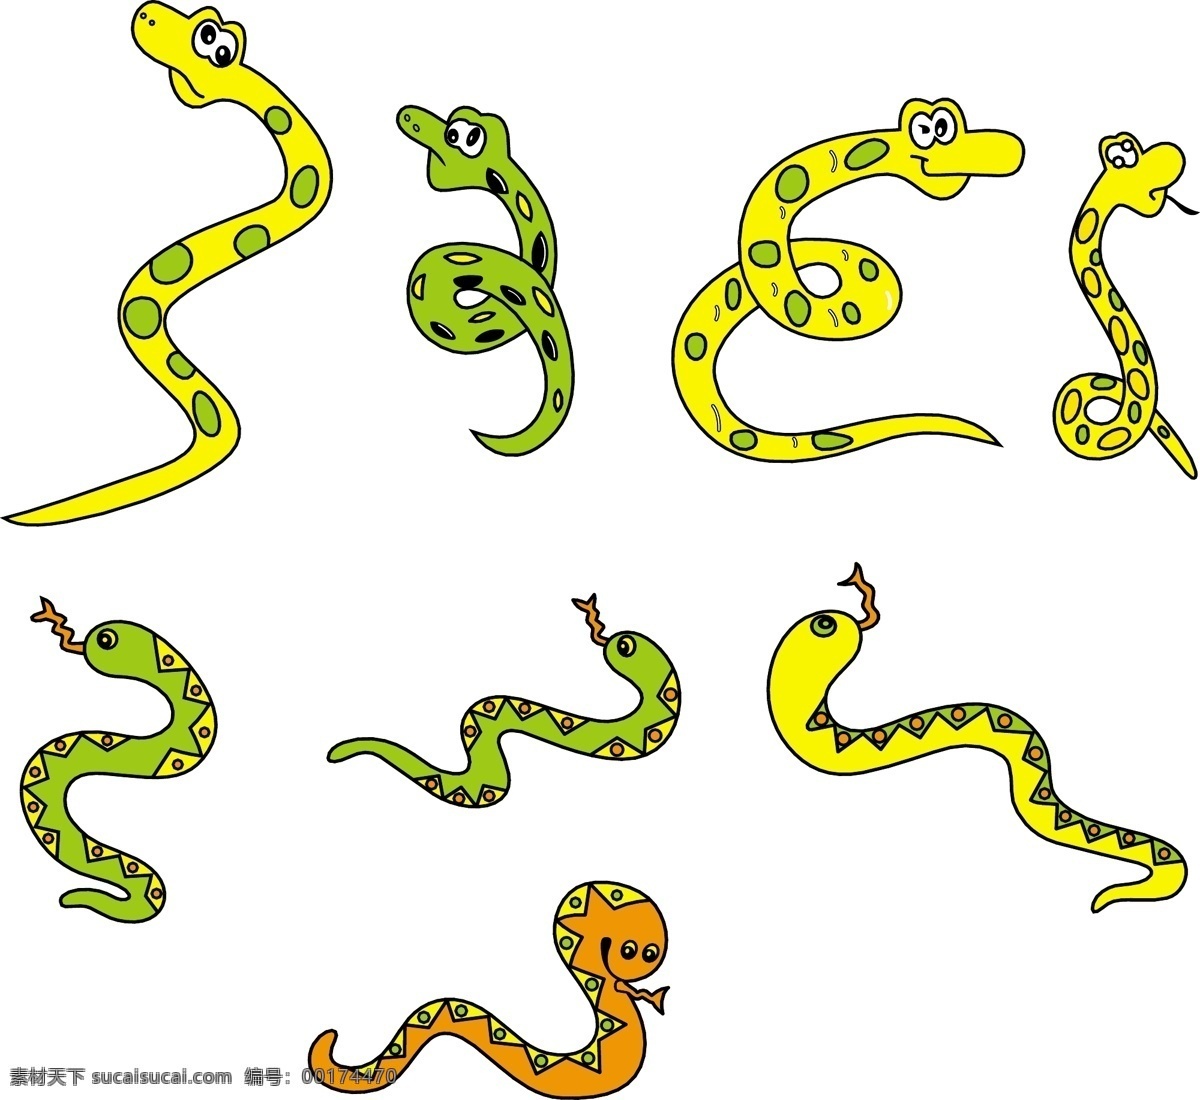 蛇图 小蛇 毒蛇 爬行动物 矢量 野生动物 生物世界 舞蛇 蛇胆 卡通蛇 可爱蛇